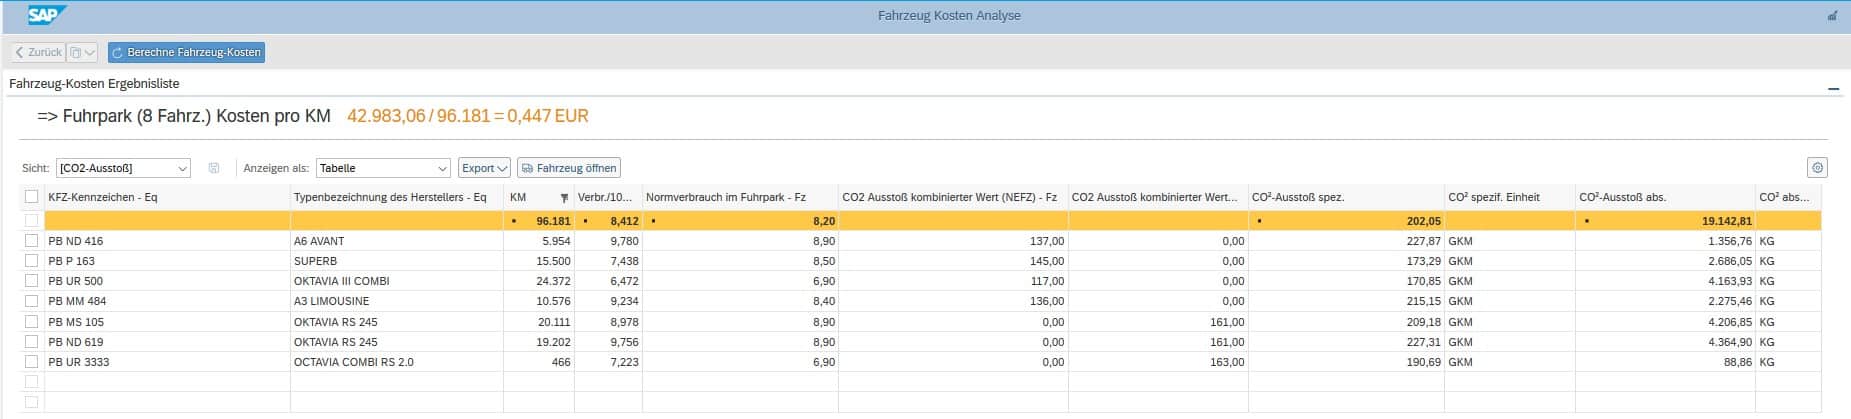 Analysen Flottenmanagement für SAP - CO2-Ausstoß